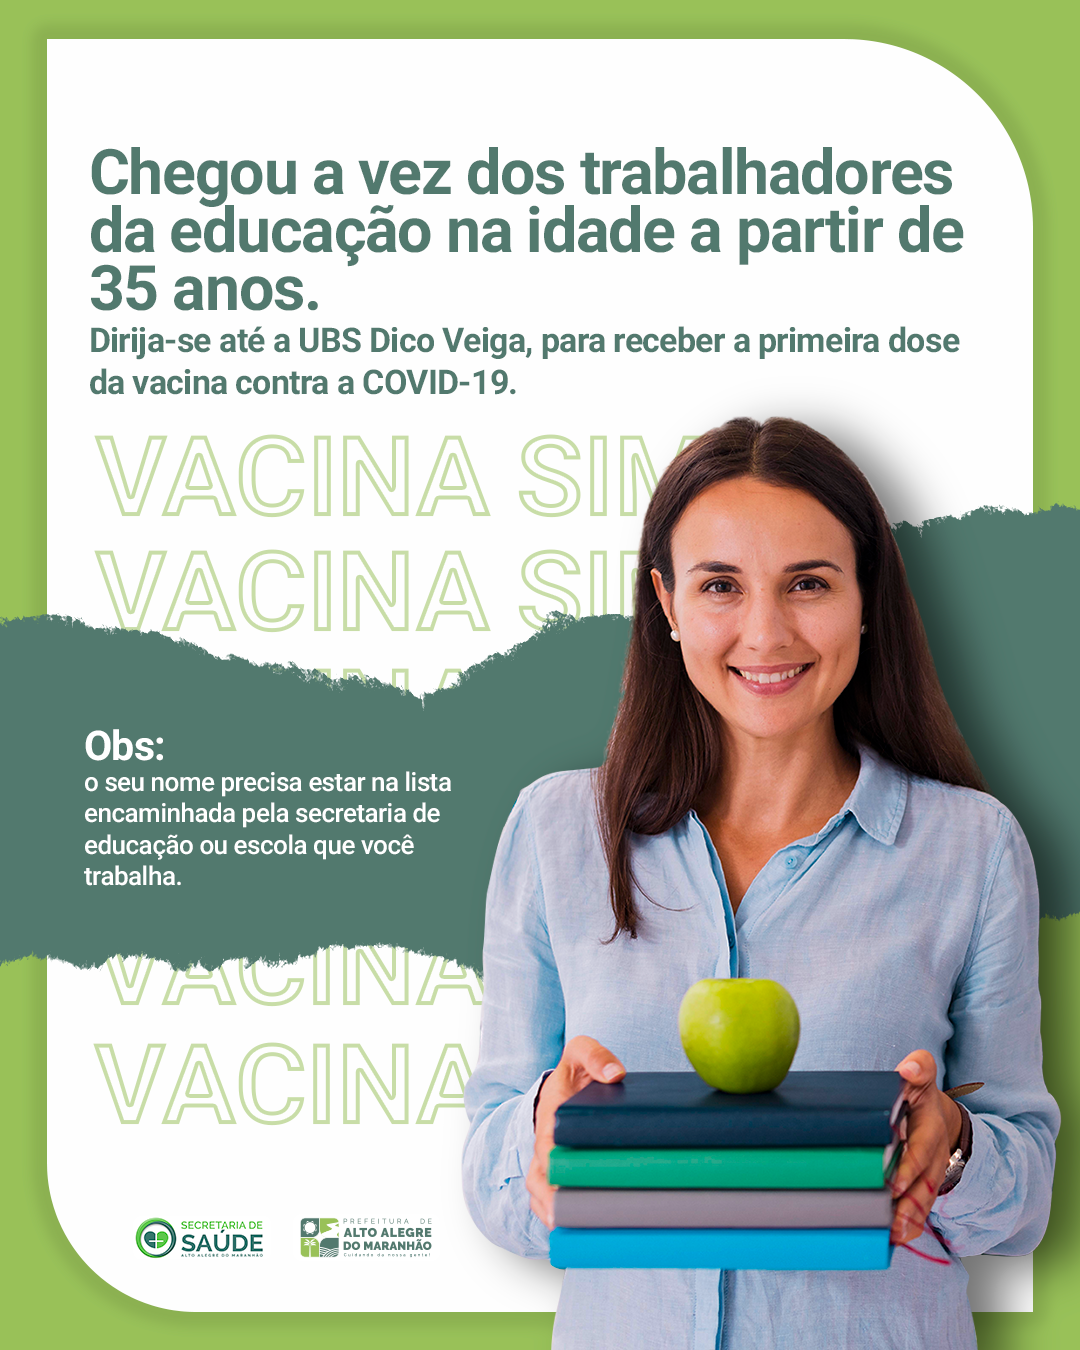 [COVID-19] Atenção profissionais da educação de Alto Alegre do Maranhão que tenha 35 anos acima chegou sua vez de vacinar contra covid-19.